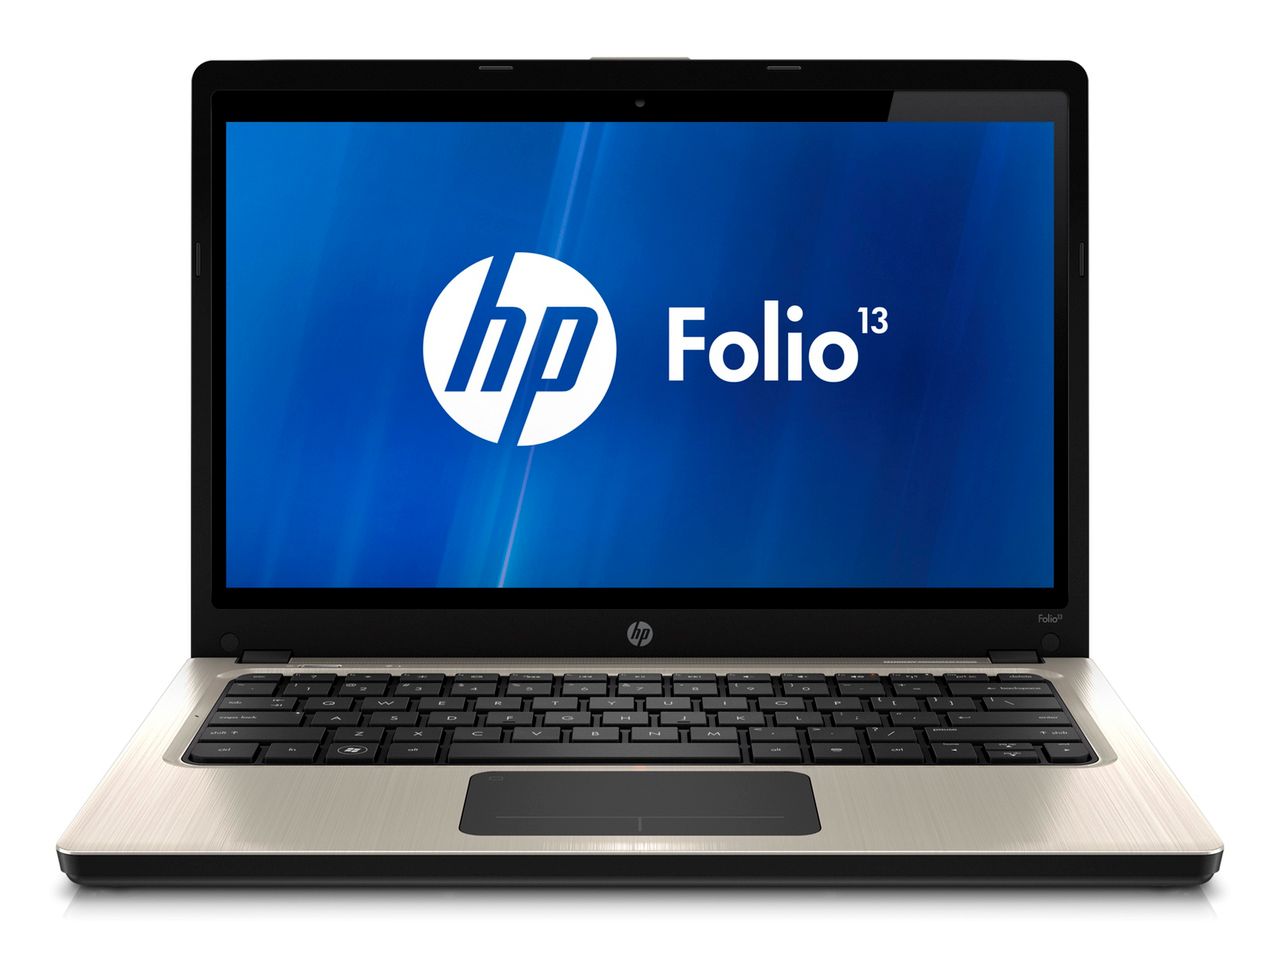 HP Folio 13 - ultrabook z aspiracjami biznesowymi [wideo]